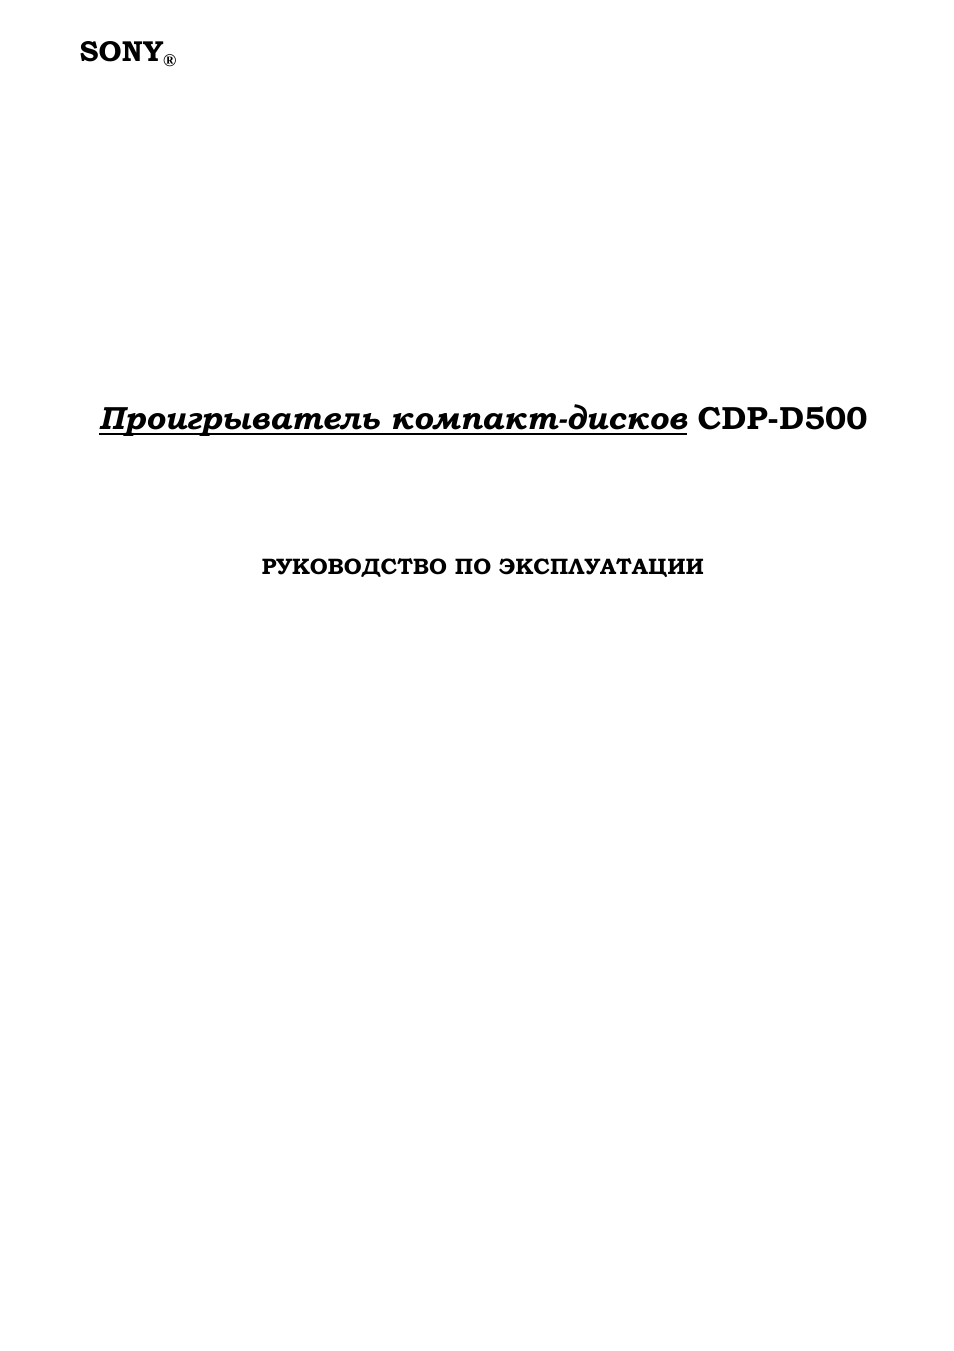 Инструкция по эксплуатации Sony CDP-D500 | 21 cтраница